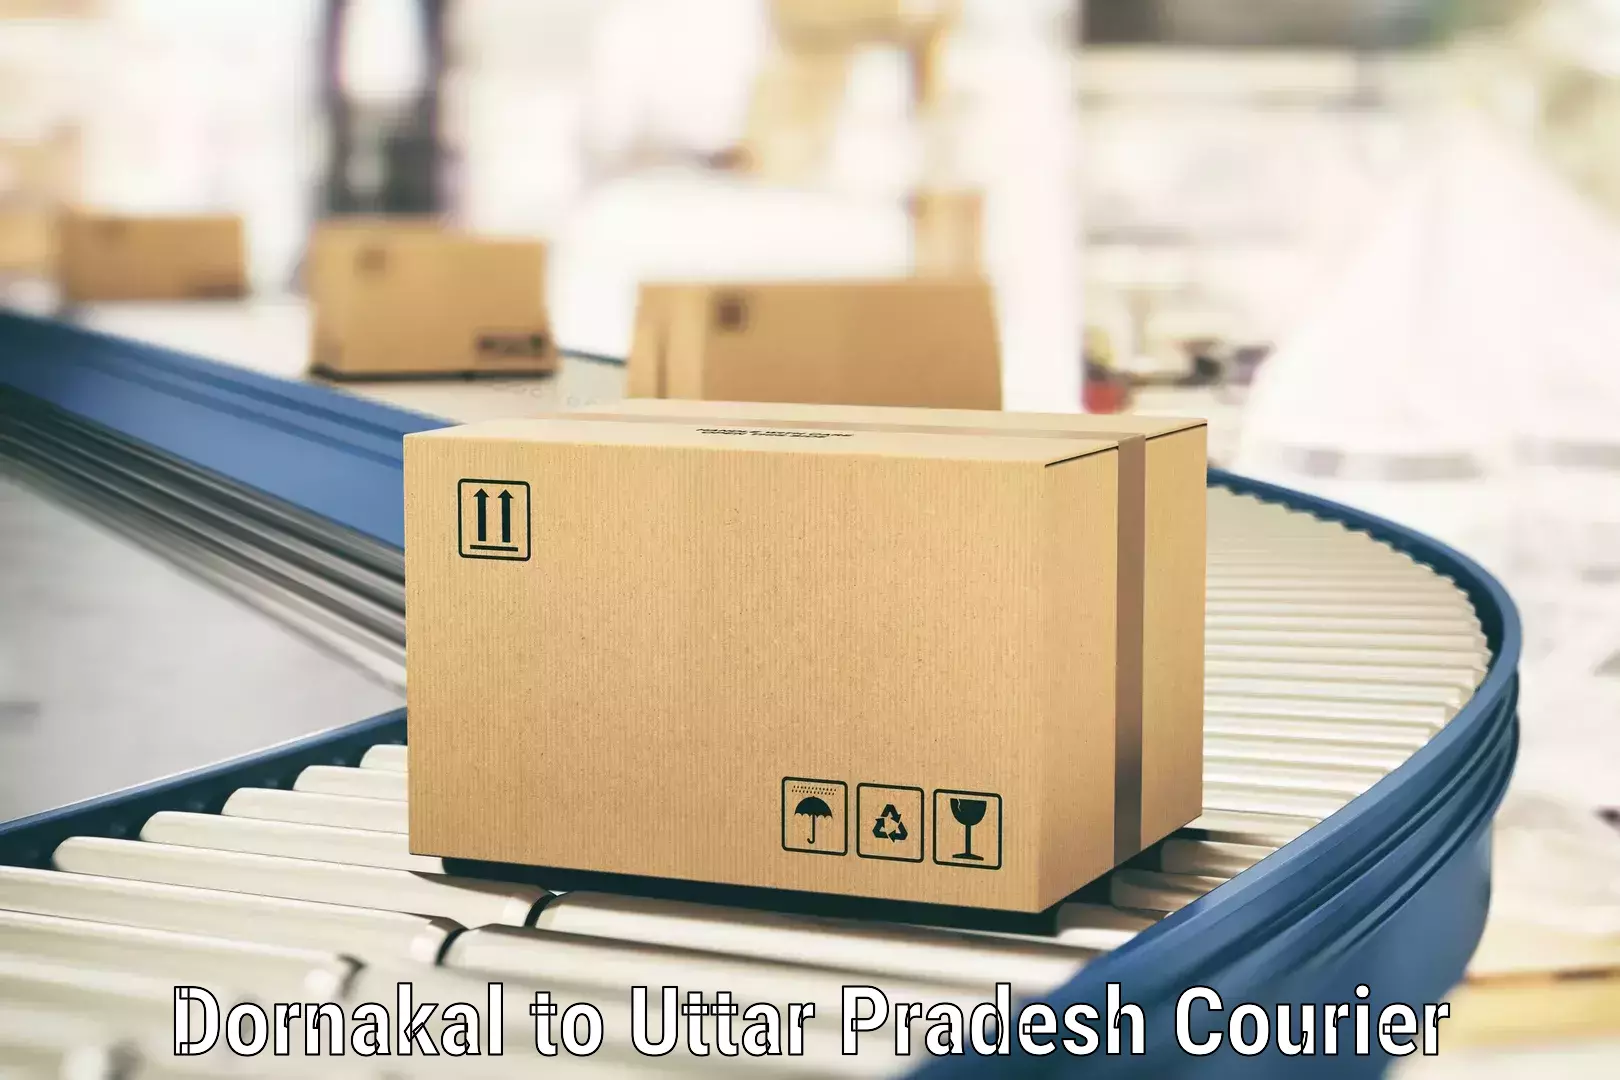 High-capacity parcel service Dornakal to Mehnagar